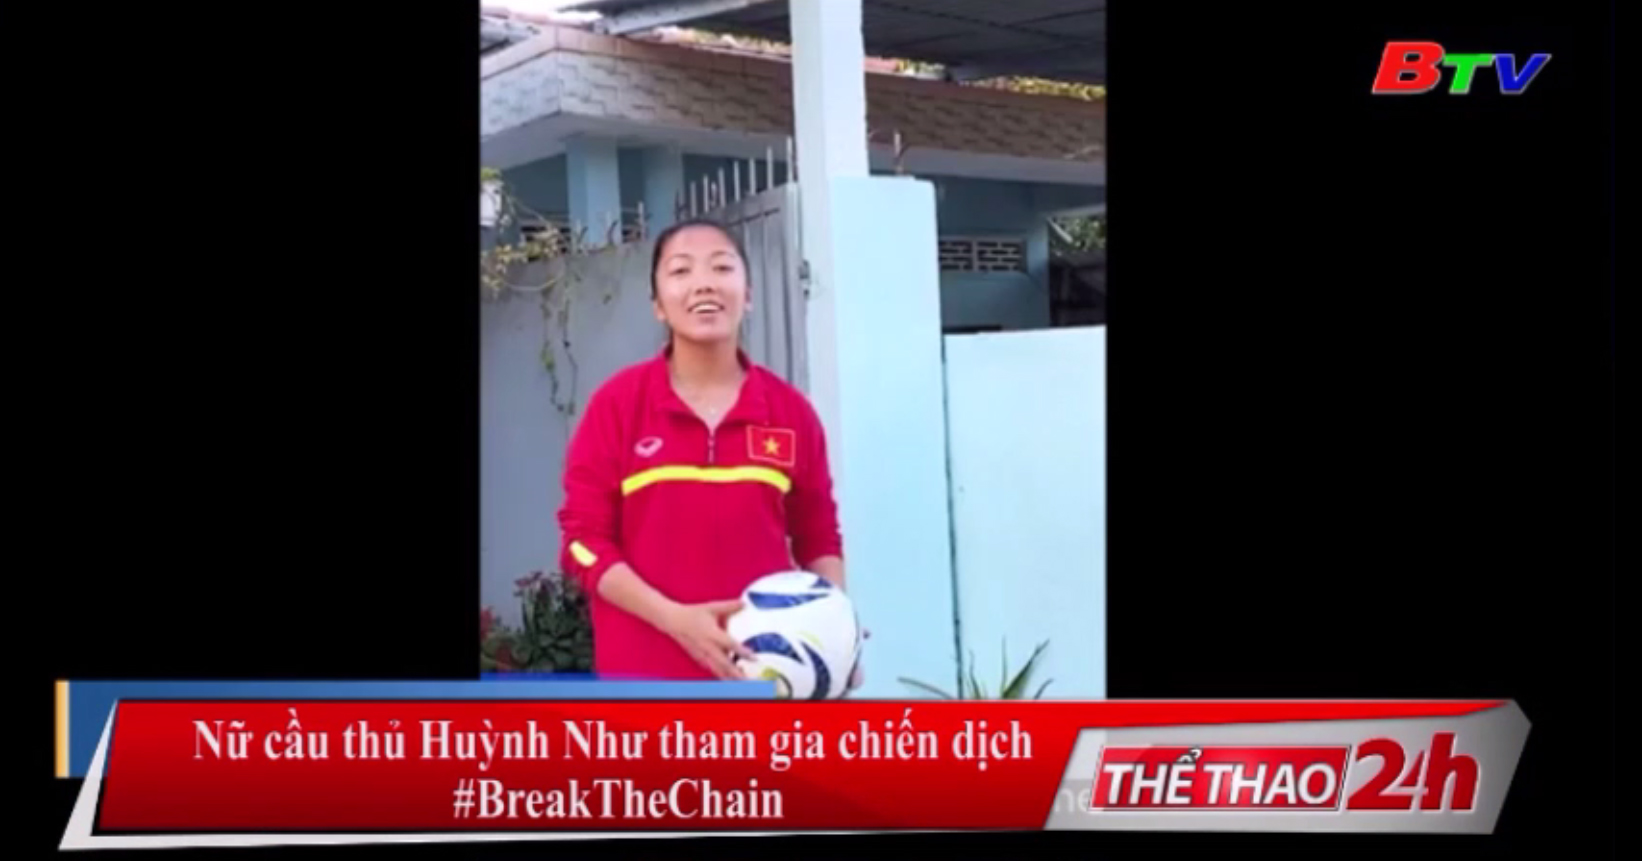 Nữ cầu thủ Huỳnh Như tham gia chiến dịch #BreakTheChain